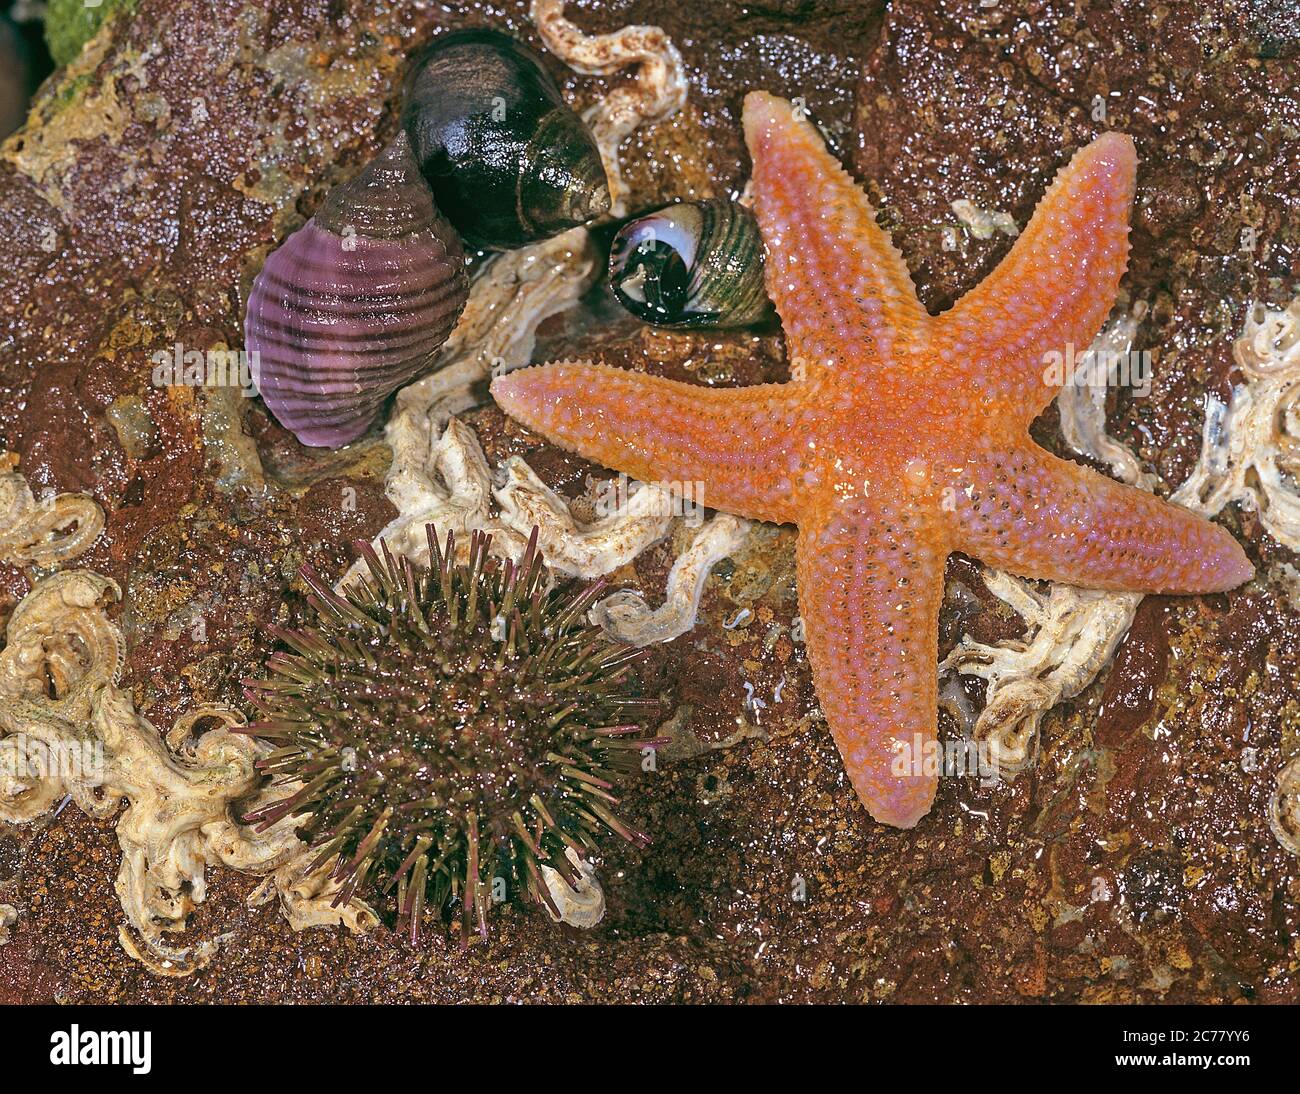 Meeresleben bei Ebbe: Seesterne (Asterias rubens), Purpurseeigel (Paracentrotus lividus) und Gemeine Periwinen (Littorina littorea) auf einem Stein. Nordsee... Stockfoto